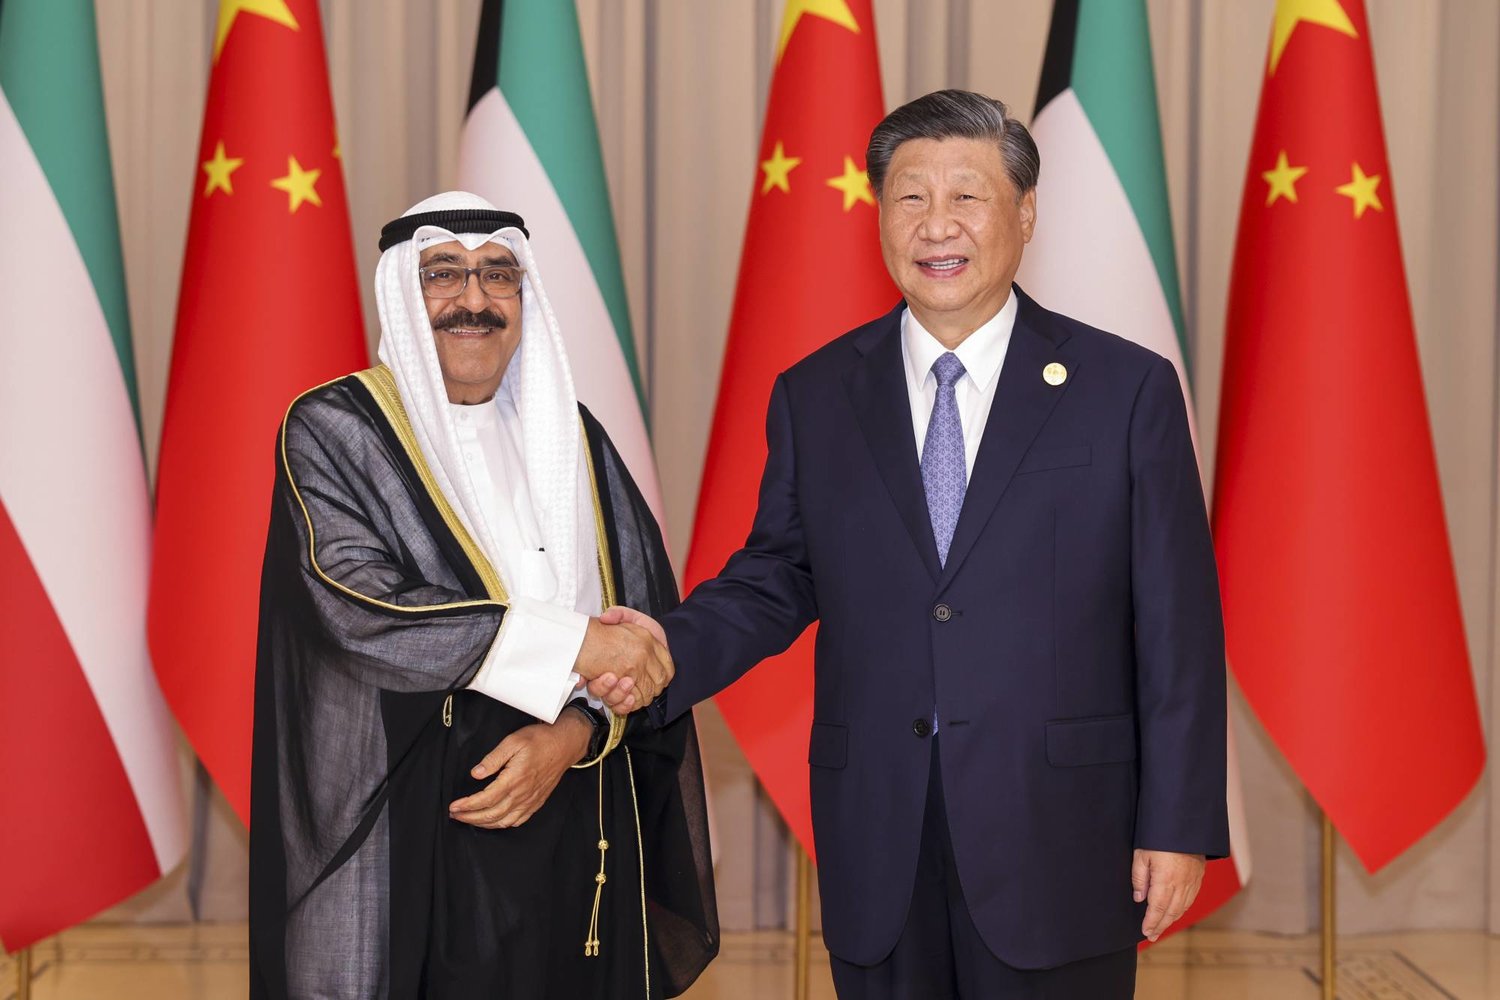 الرئيس الصيني شي جينبينغ (على اليمين) يصافح ولي عهد الكويت الشيخ مشعل الأحمد الجابر الصباح قبل اجتماعهما الثنائي في هانغتشو الصين (وكالة أنباء شينخوا)